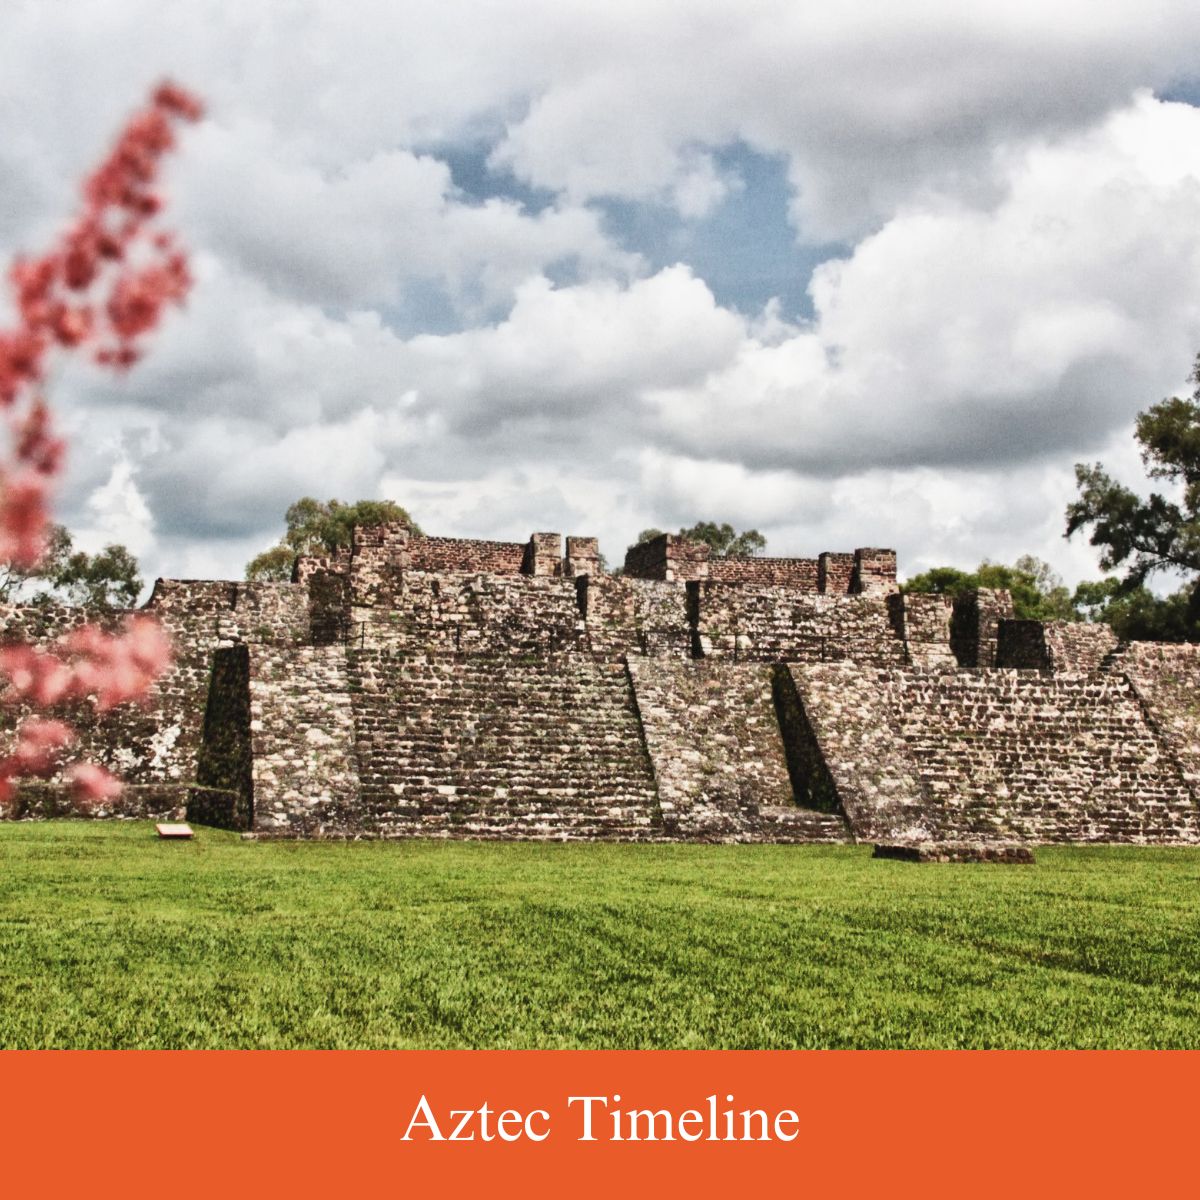 aztec empire timeline